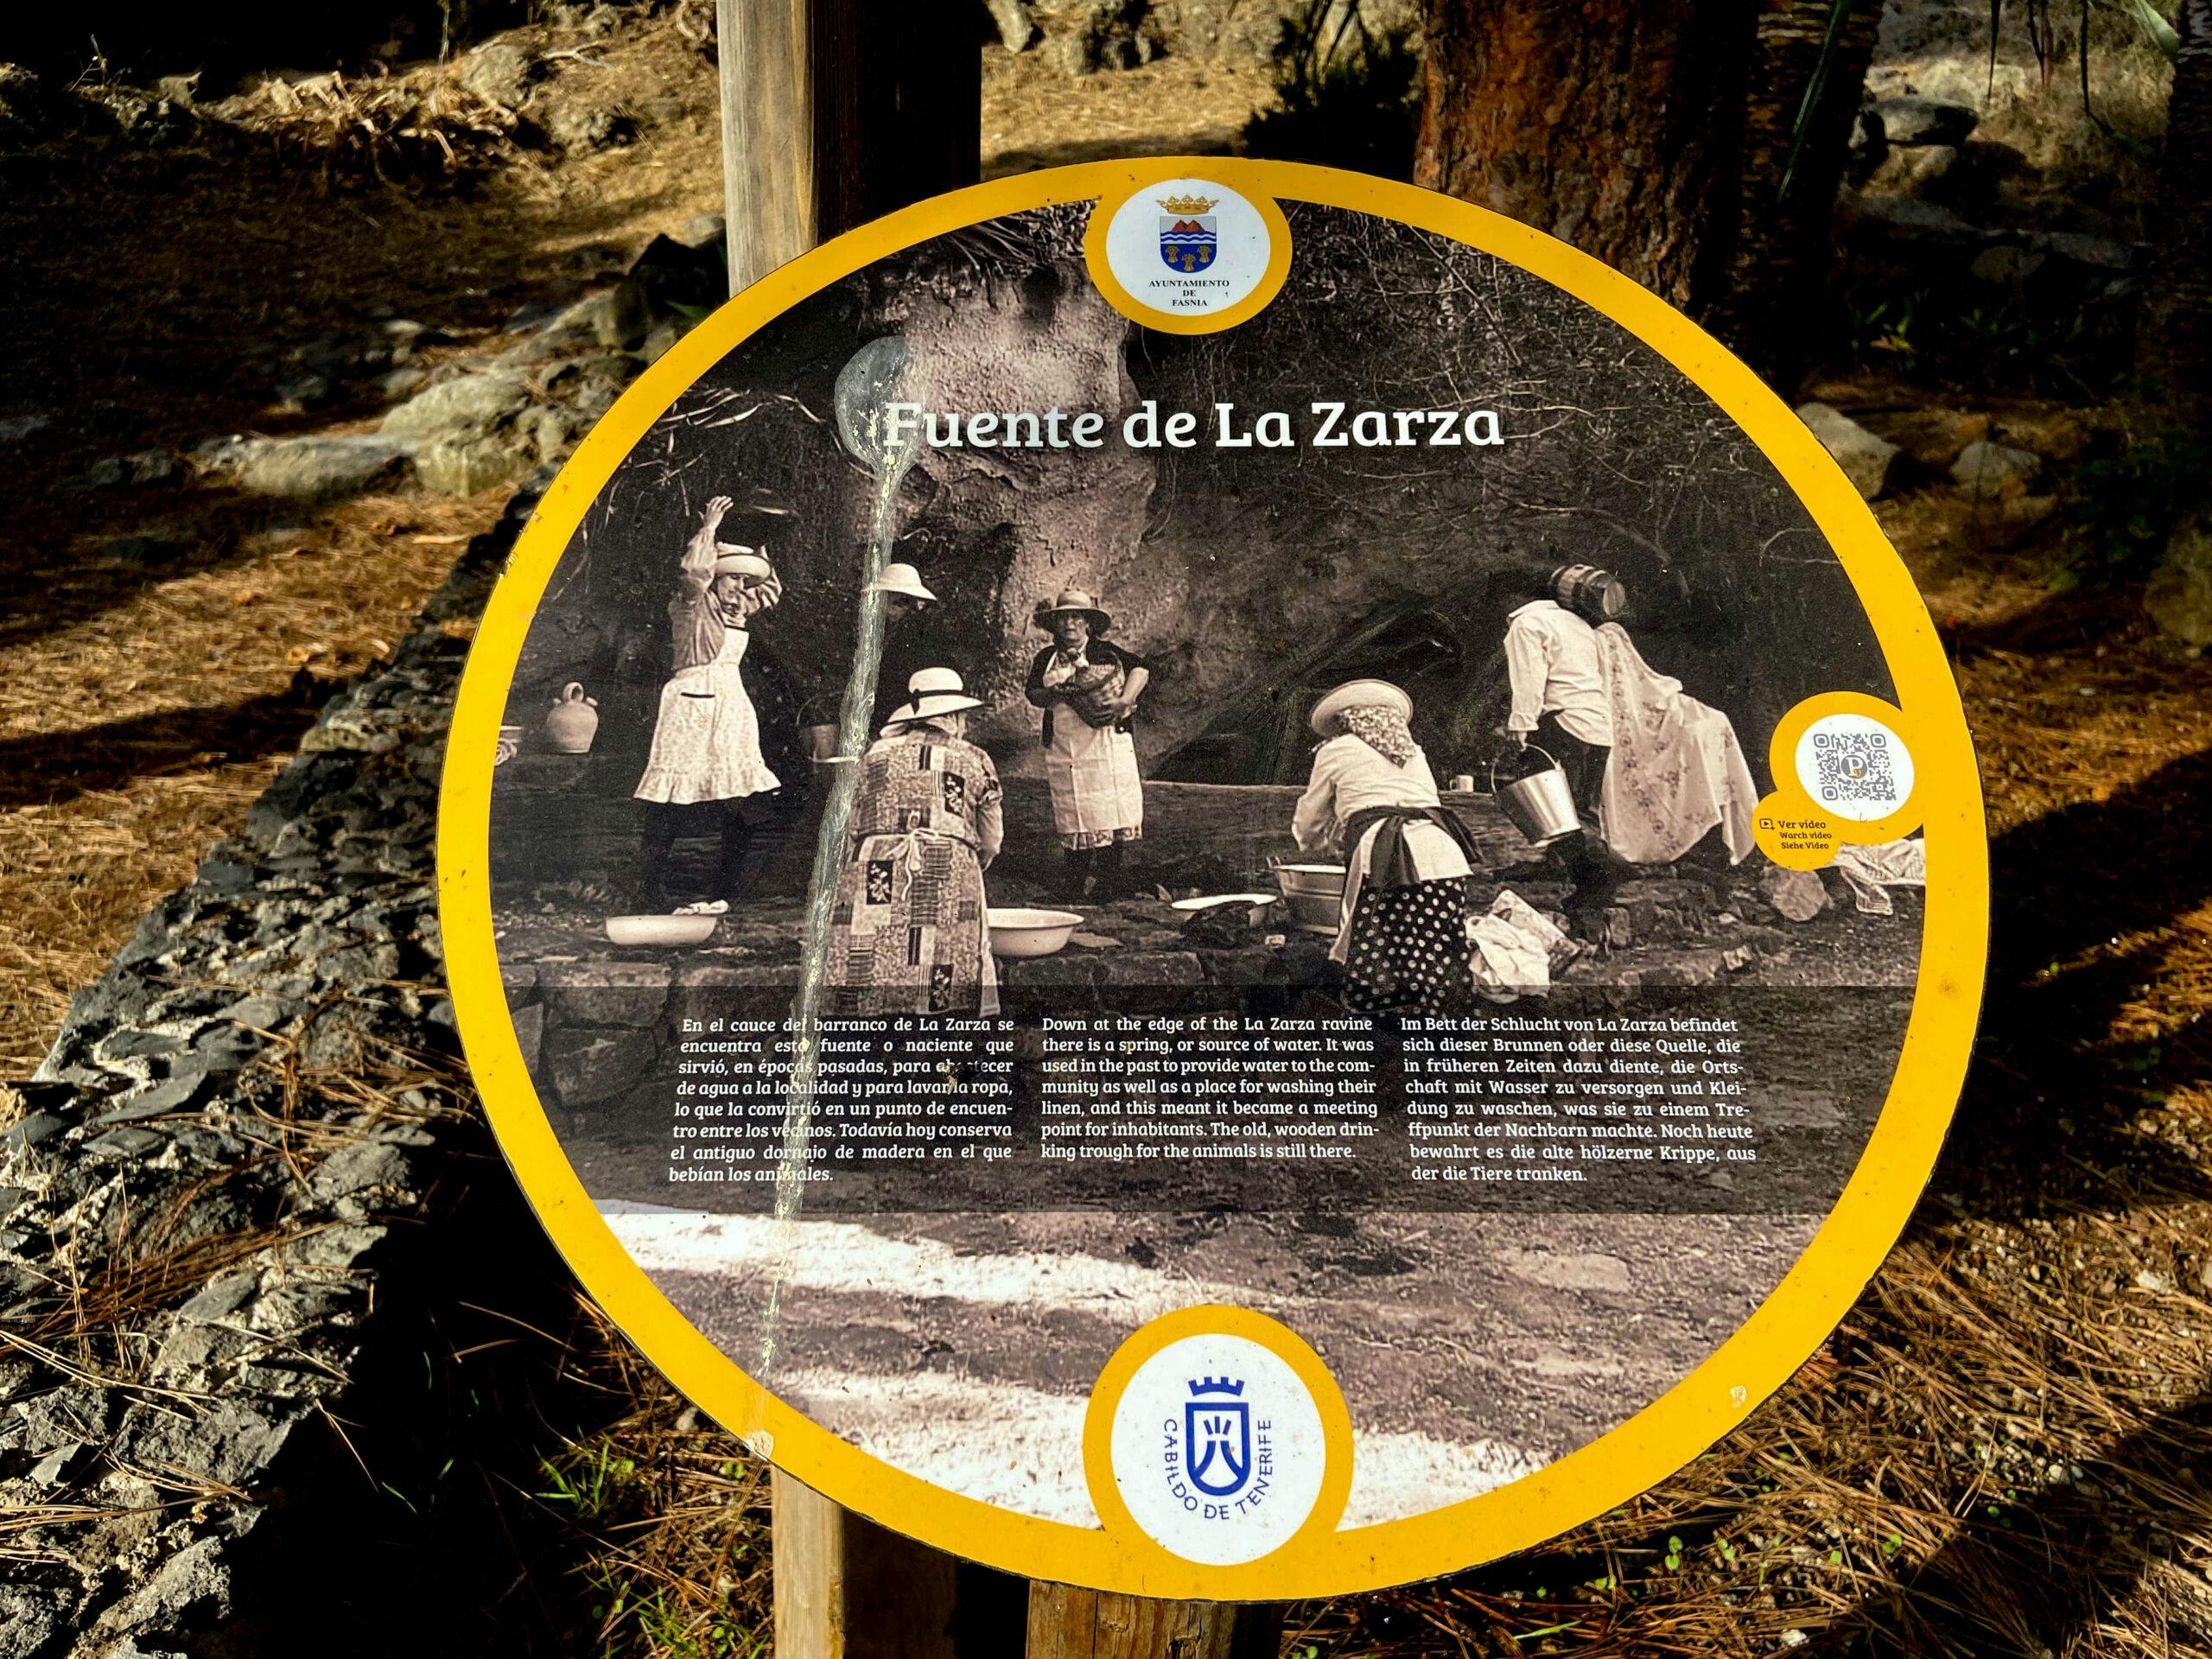 La Zarza – Instructive round in impressive landscape